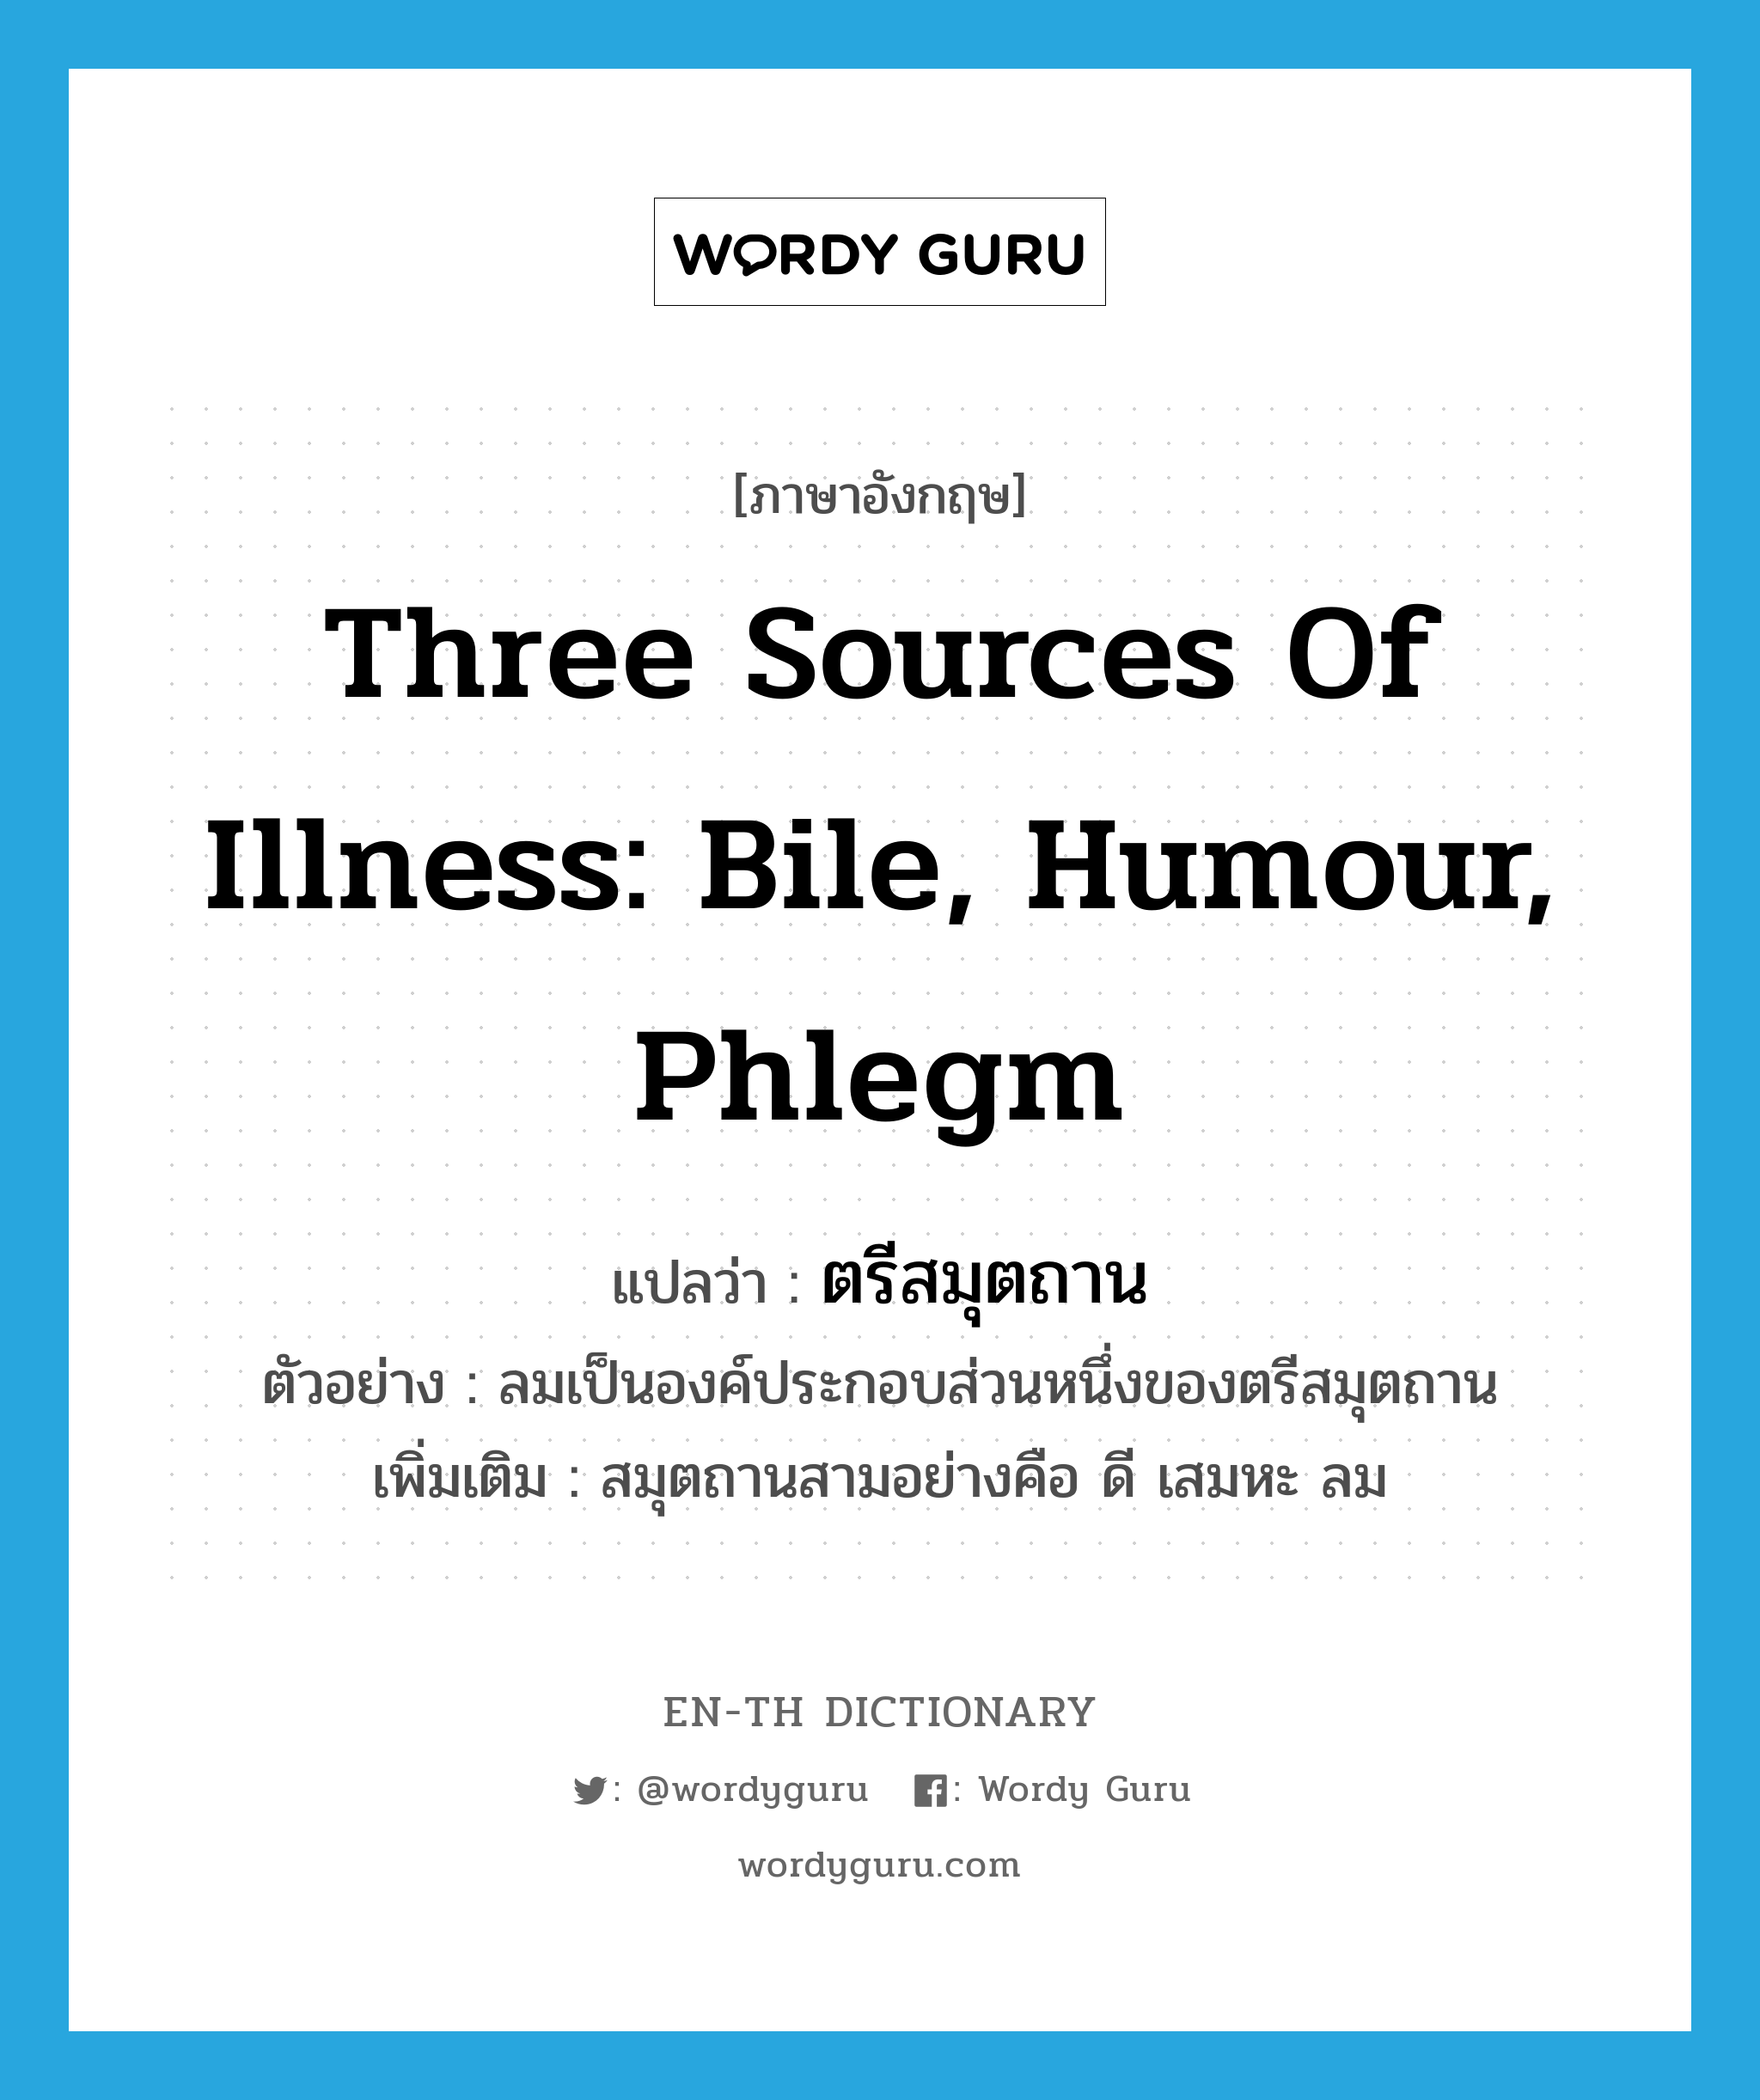 three sources of illness: bile, humour, phlegm แปลว่า?, คำศัพท์ภาษาอังกฤษ three sources of illness: bile, humour, phlegm แปลว่า ตรีสมุตถาน ประเภท N ตัวอย่าง ลมเป็นองค์ประกอบส่วนหนึ่งของตรีสมุตถาน เพิ่มเติม สมุตถานสามอย่างคือ ดี เสมหะ ลม หมวด N